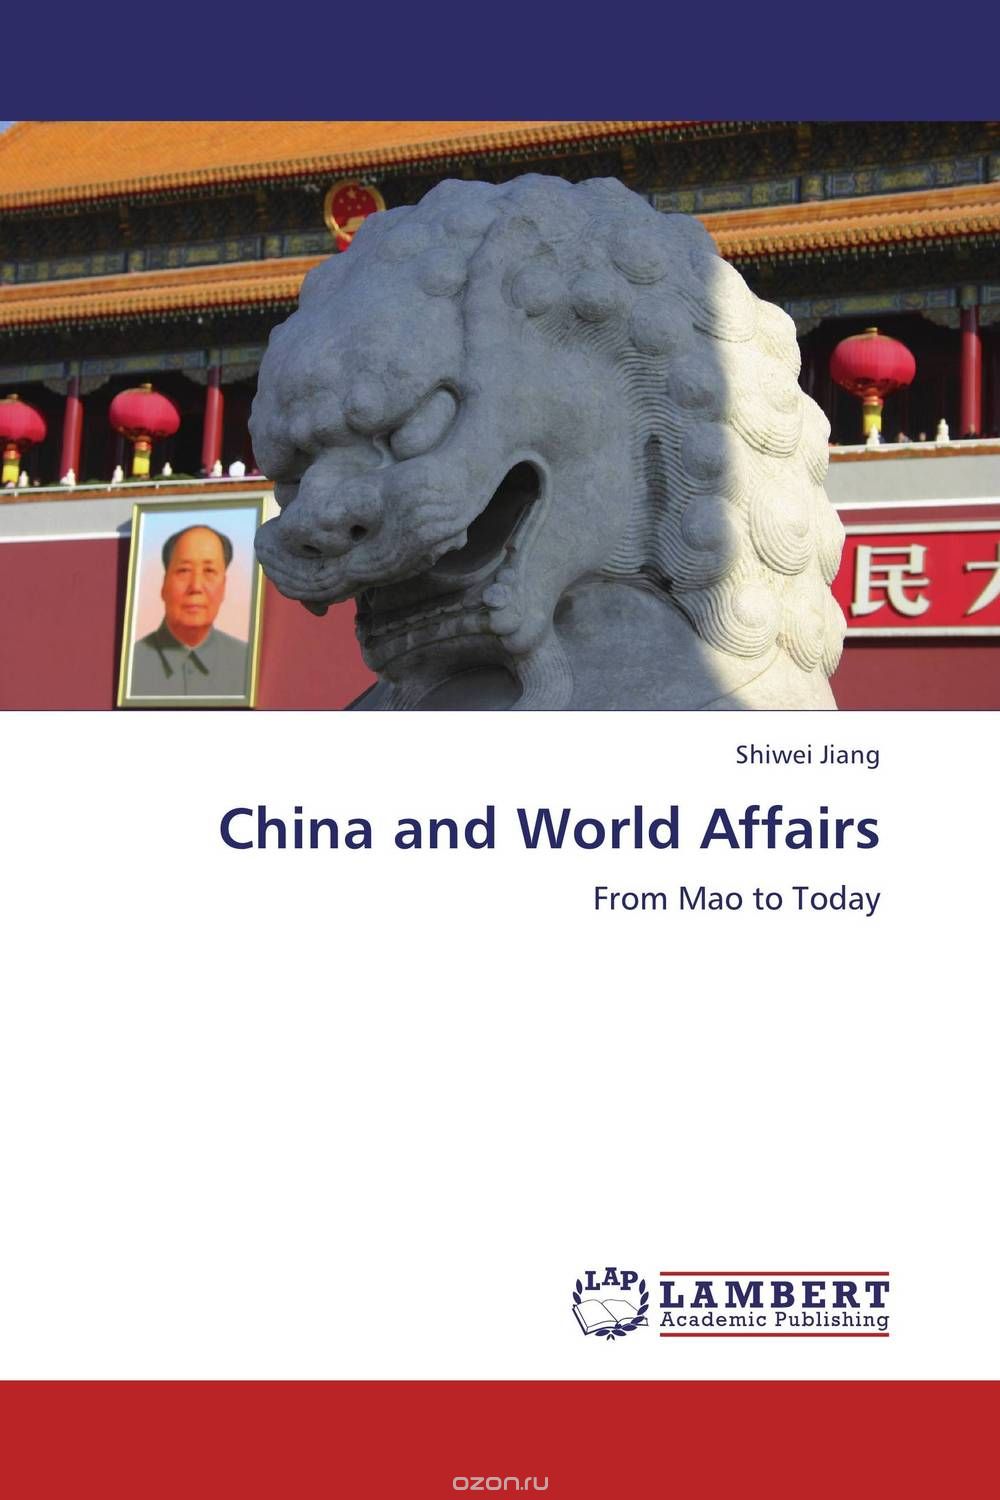 Скачать книгу "China and World Affairs"